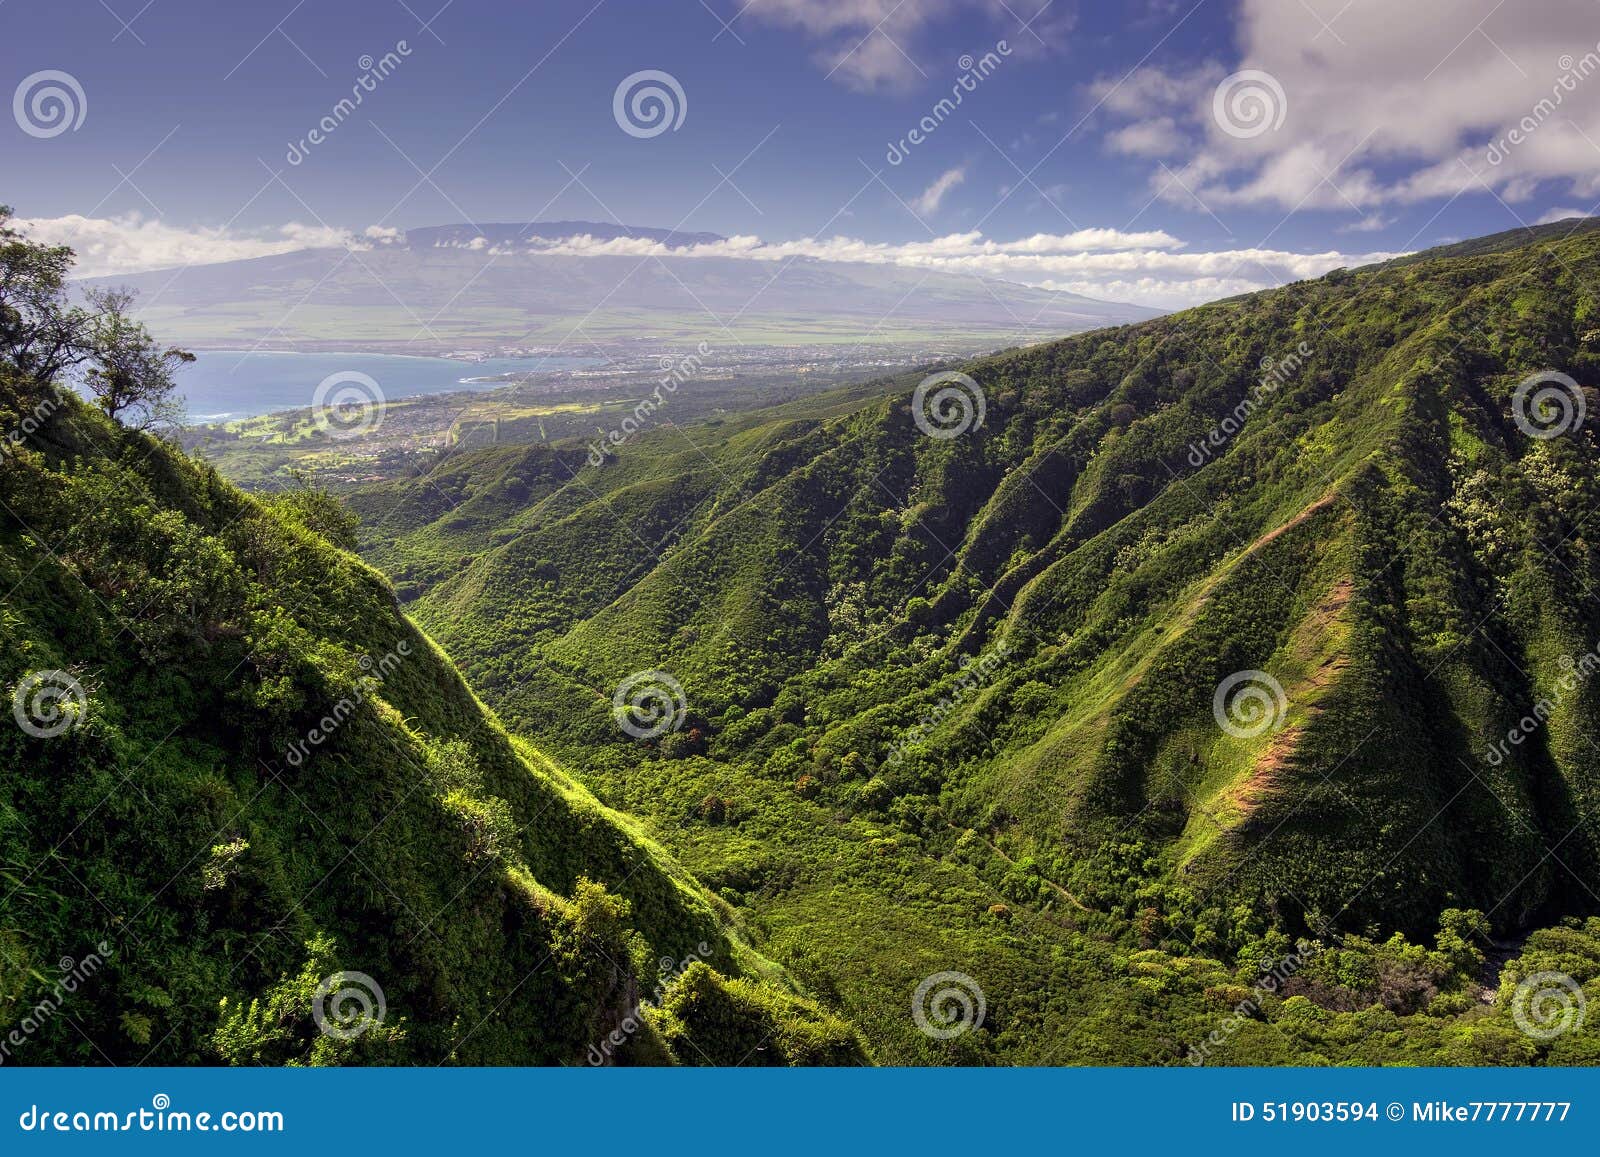 waihee ridge trail, over looking kahului and haleakala, maui, hawaii